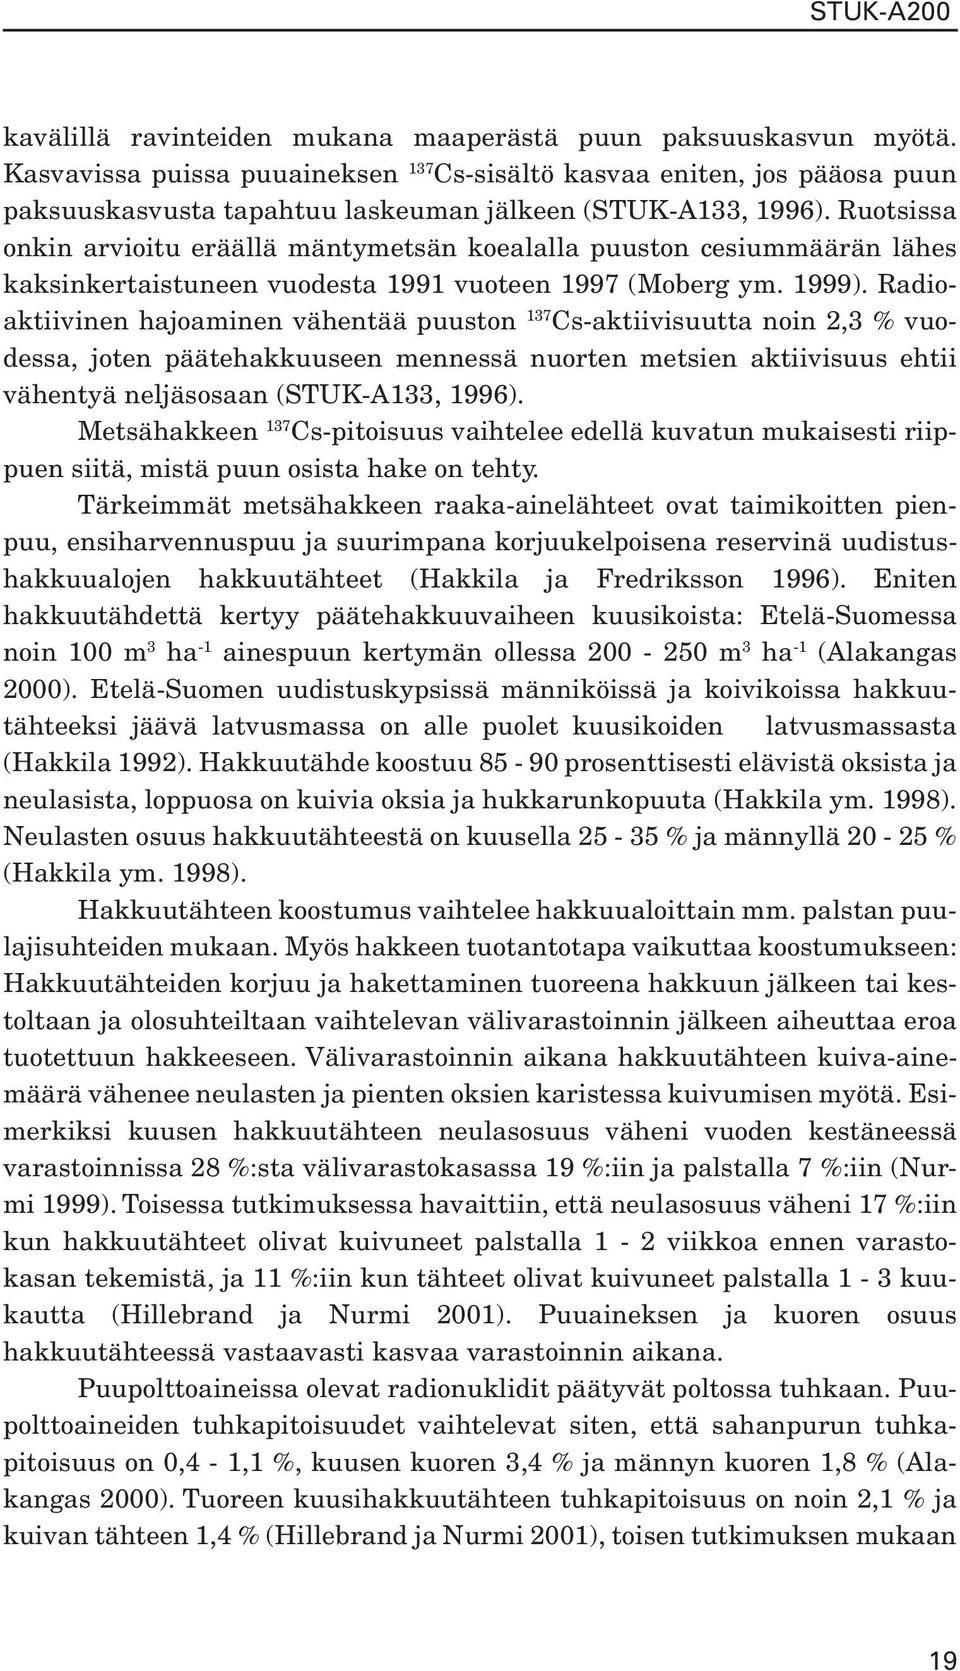 Ruotsissa onkin arvioitu eräällä mäntymetsän koealalla puuston cesiummäärän lähes kaksinkertaistuneen vuodesta 1991 vuoteen 1997 (Moberg ym. 1999).